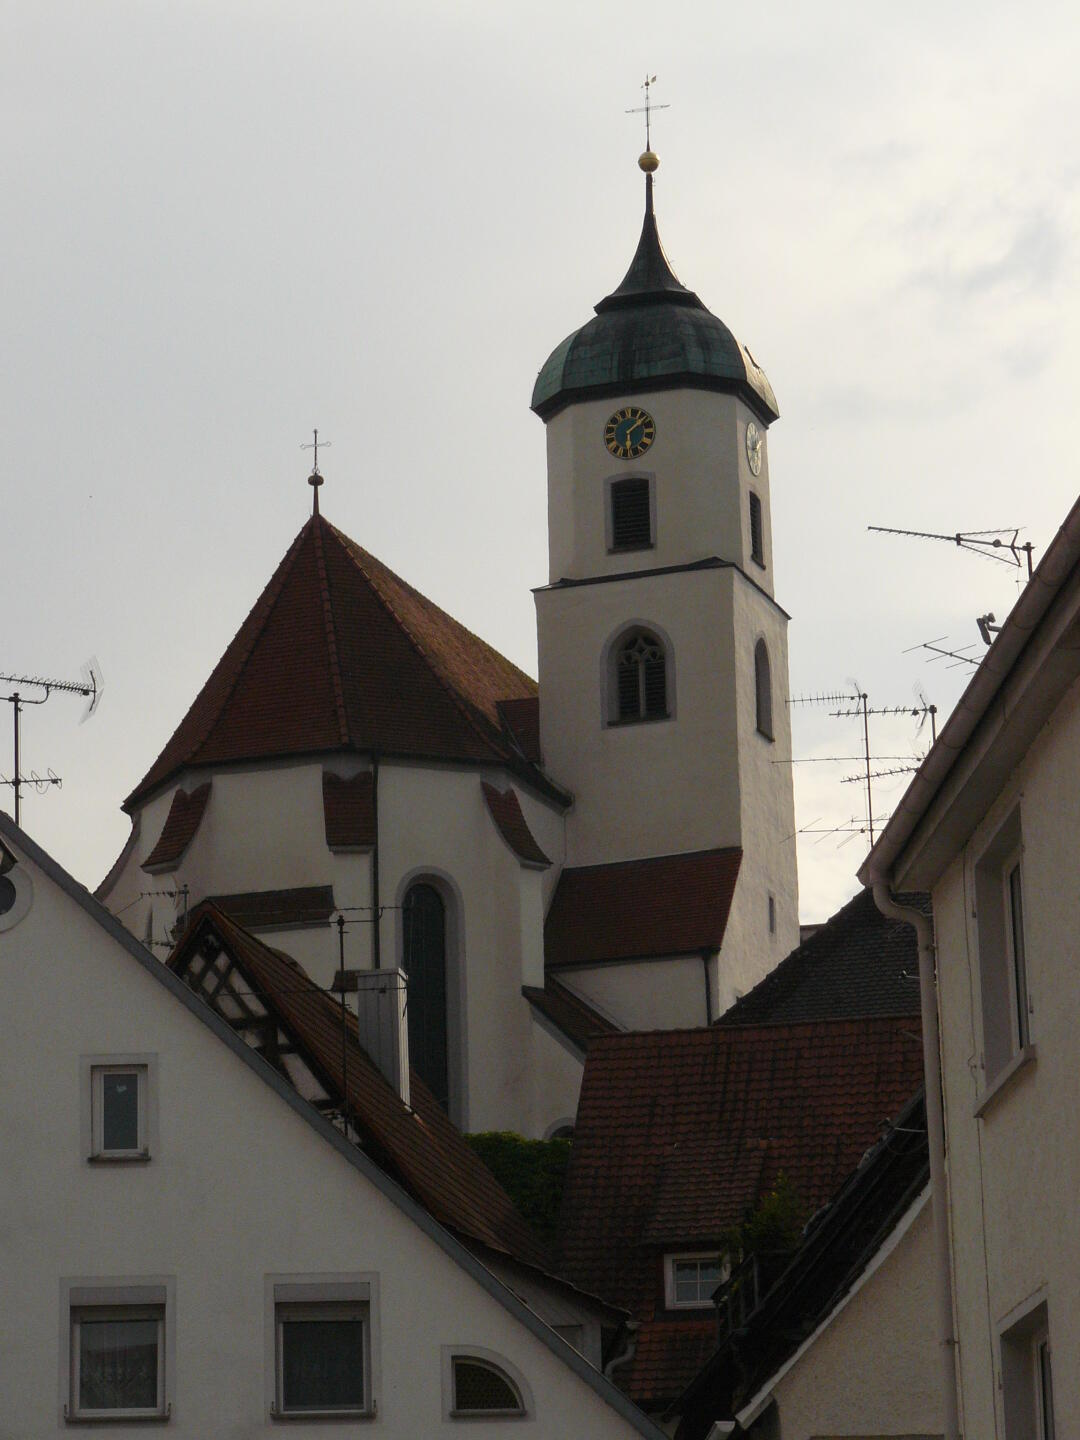 Die Kirche von Scheer, die innen sehr schön dekoriert ist.